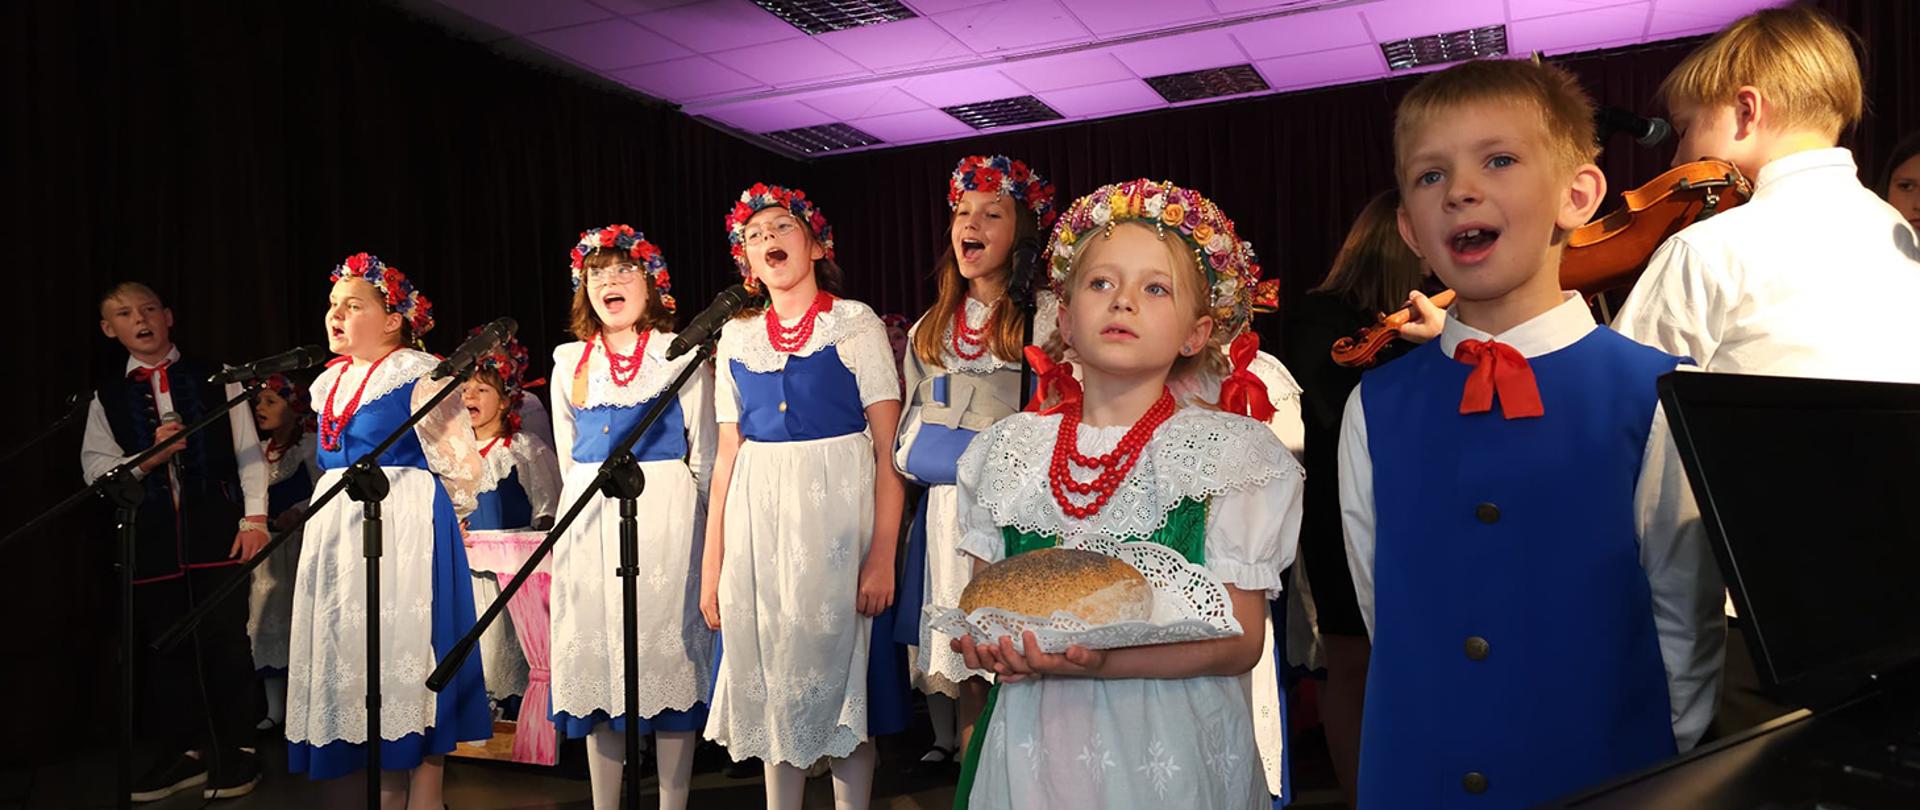 Grupa dzieci w biało niebieskich strojach śpiewająca na scenie